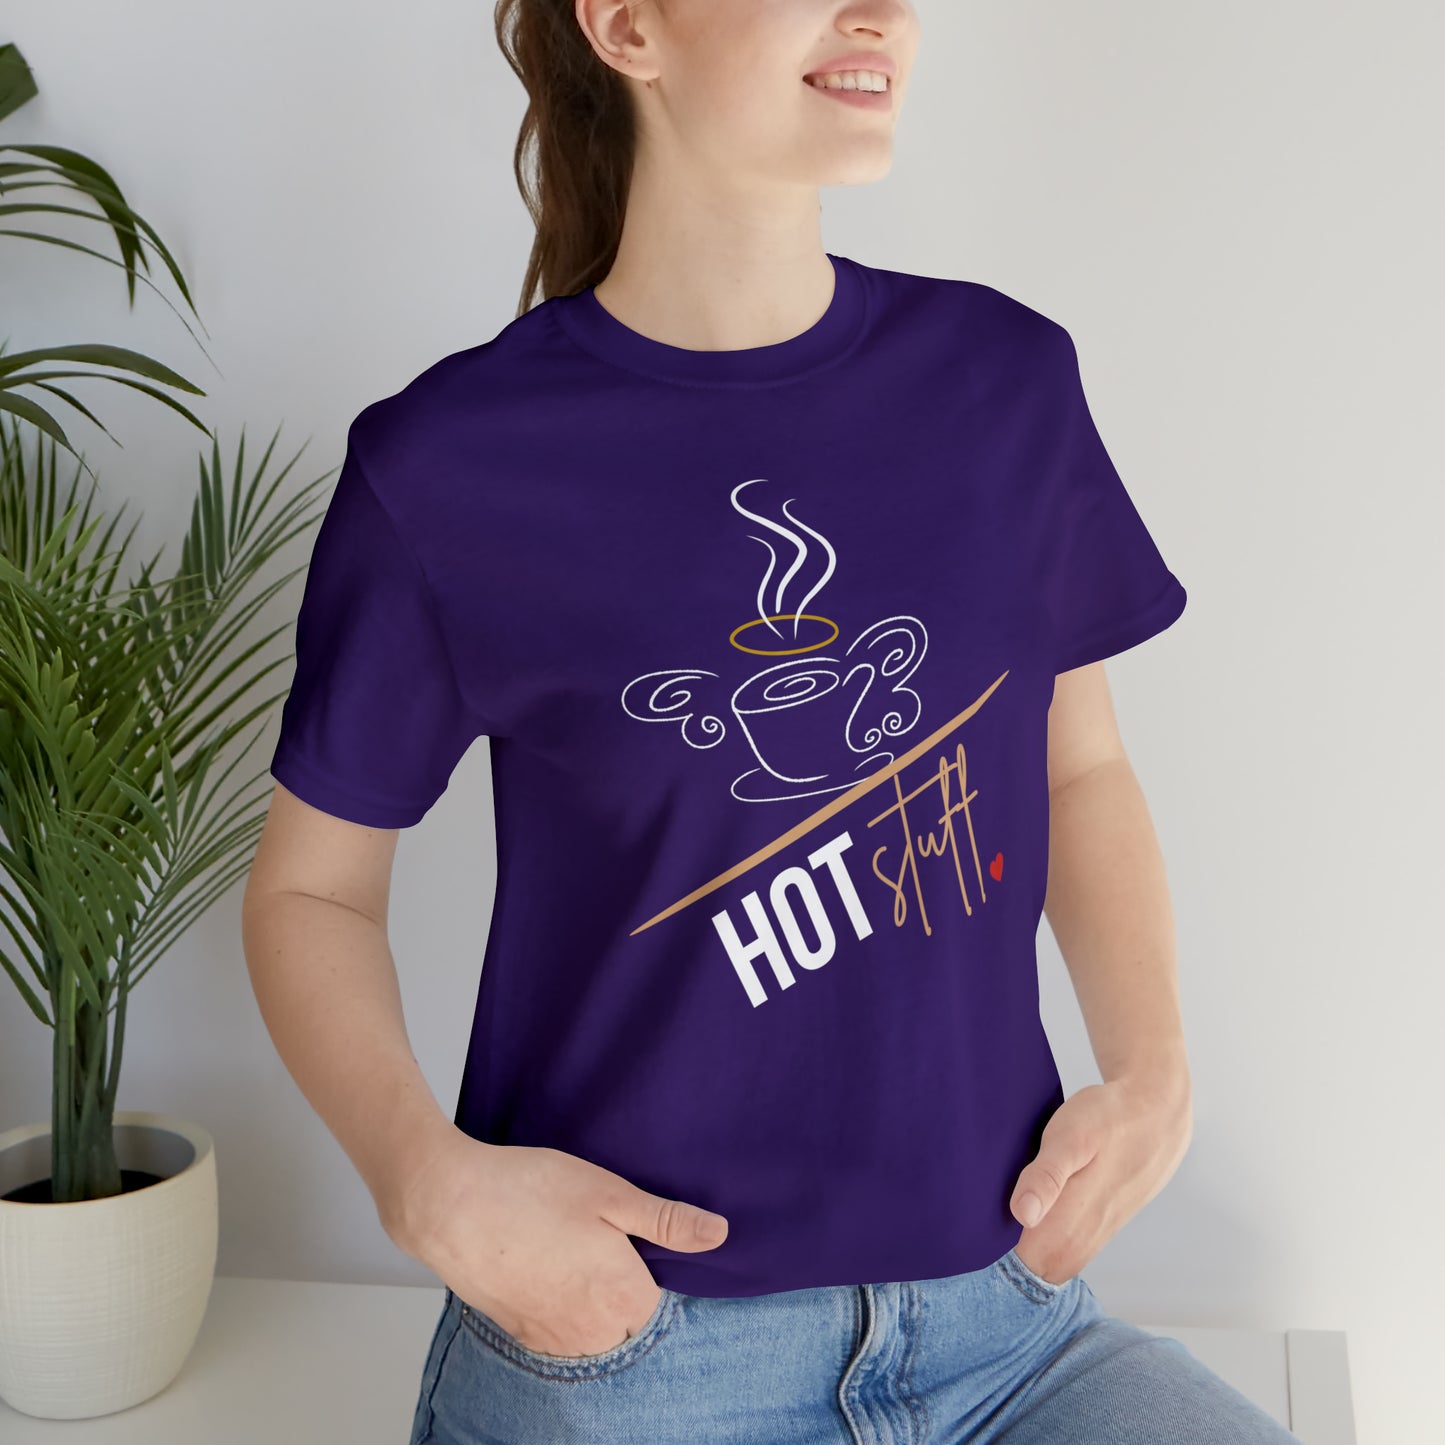 A "Hot Stuff!" Unisex T-shirt